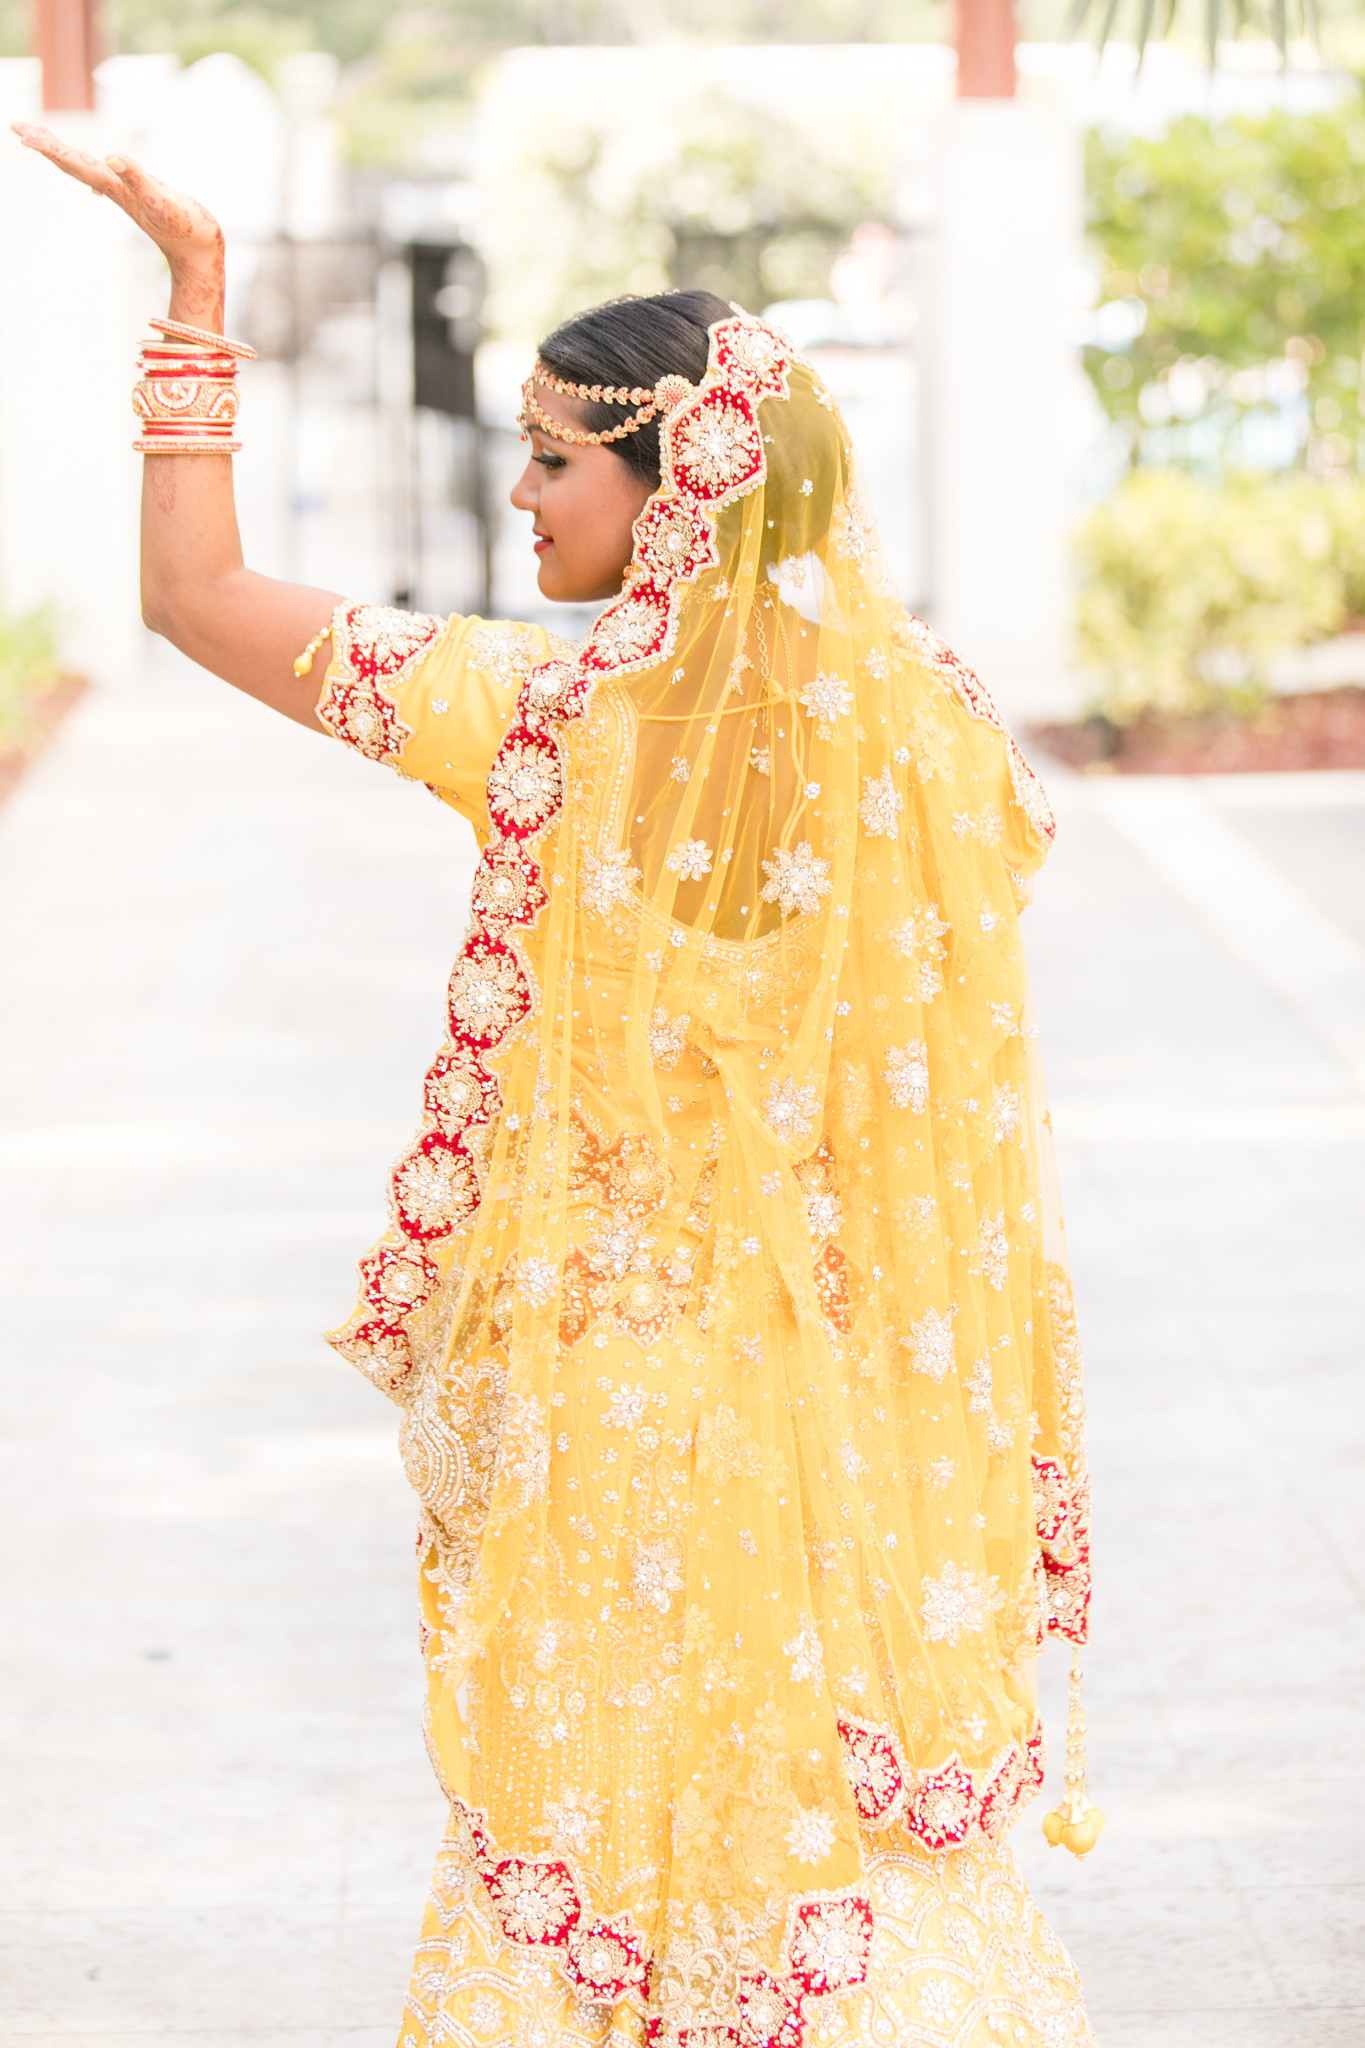 Bride looks over shoulder in Indian pose.